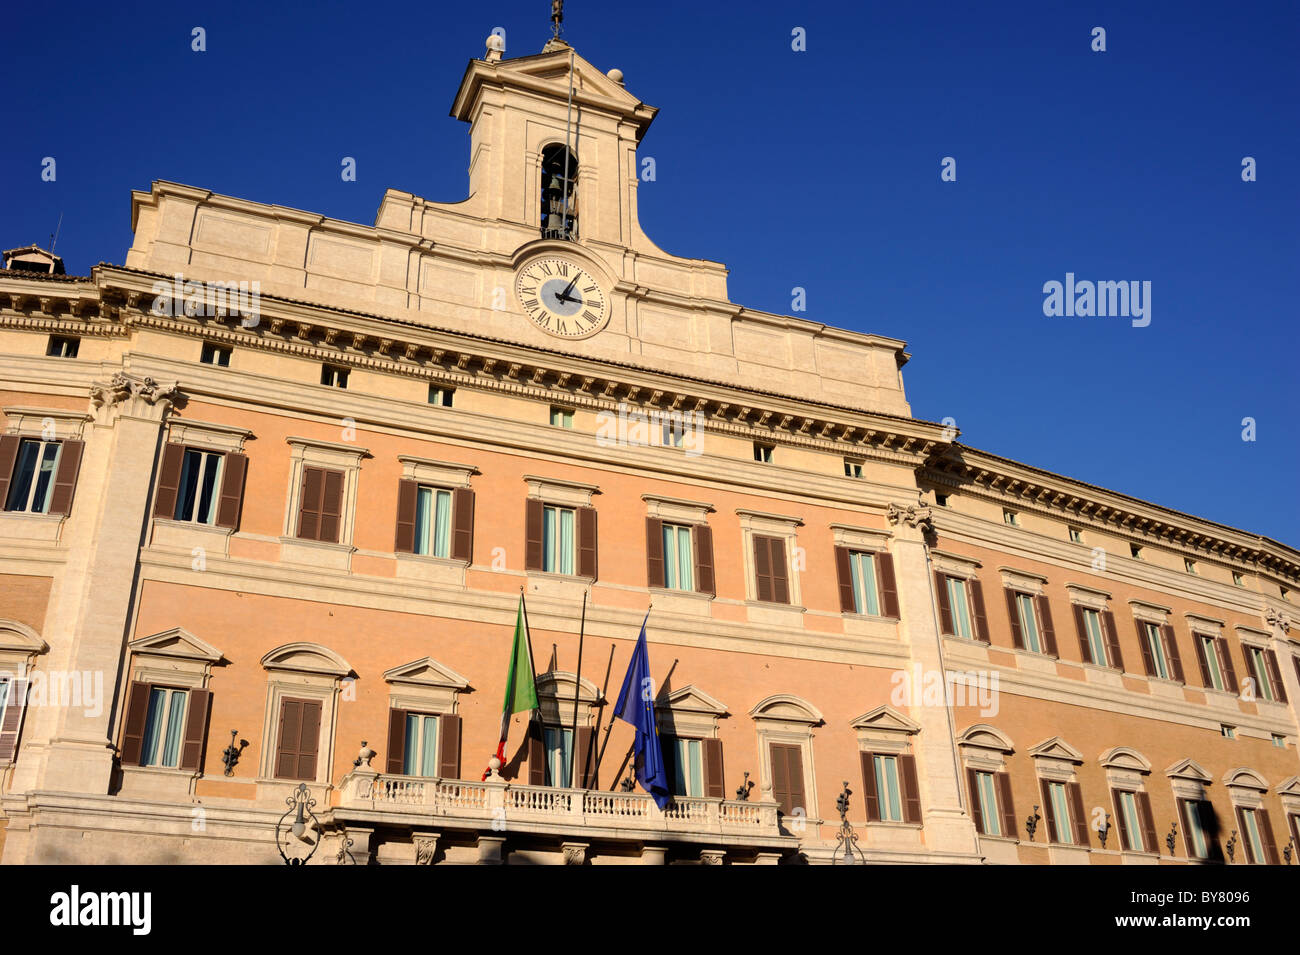 Italie, Rome, Palazzo di Montecitorio, Parlement italien, chambre des députés Banque D'Images